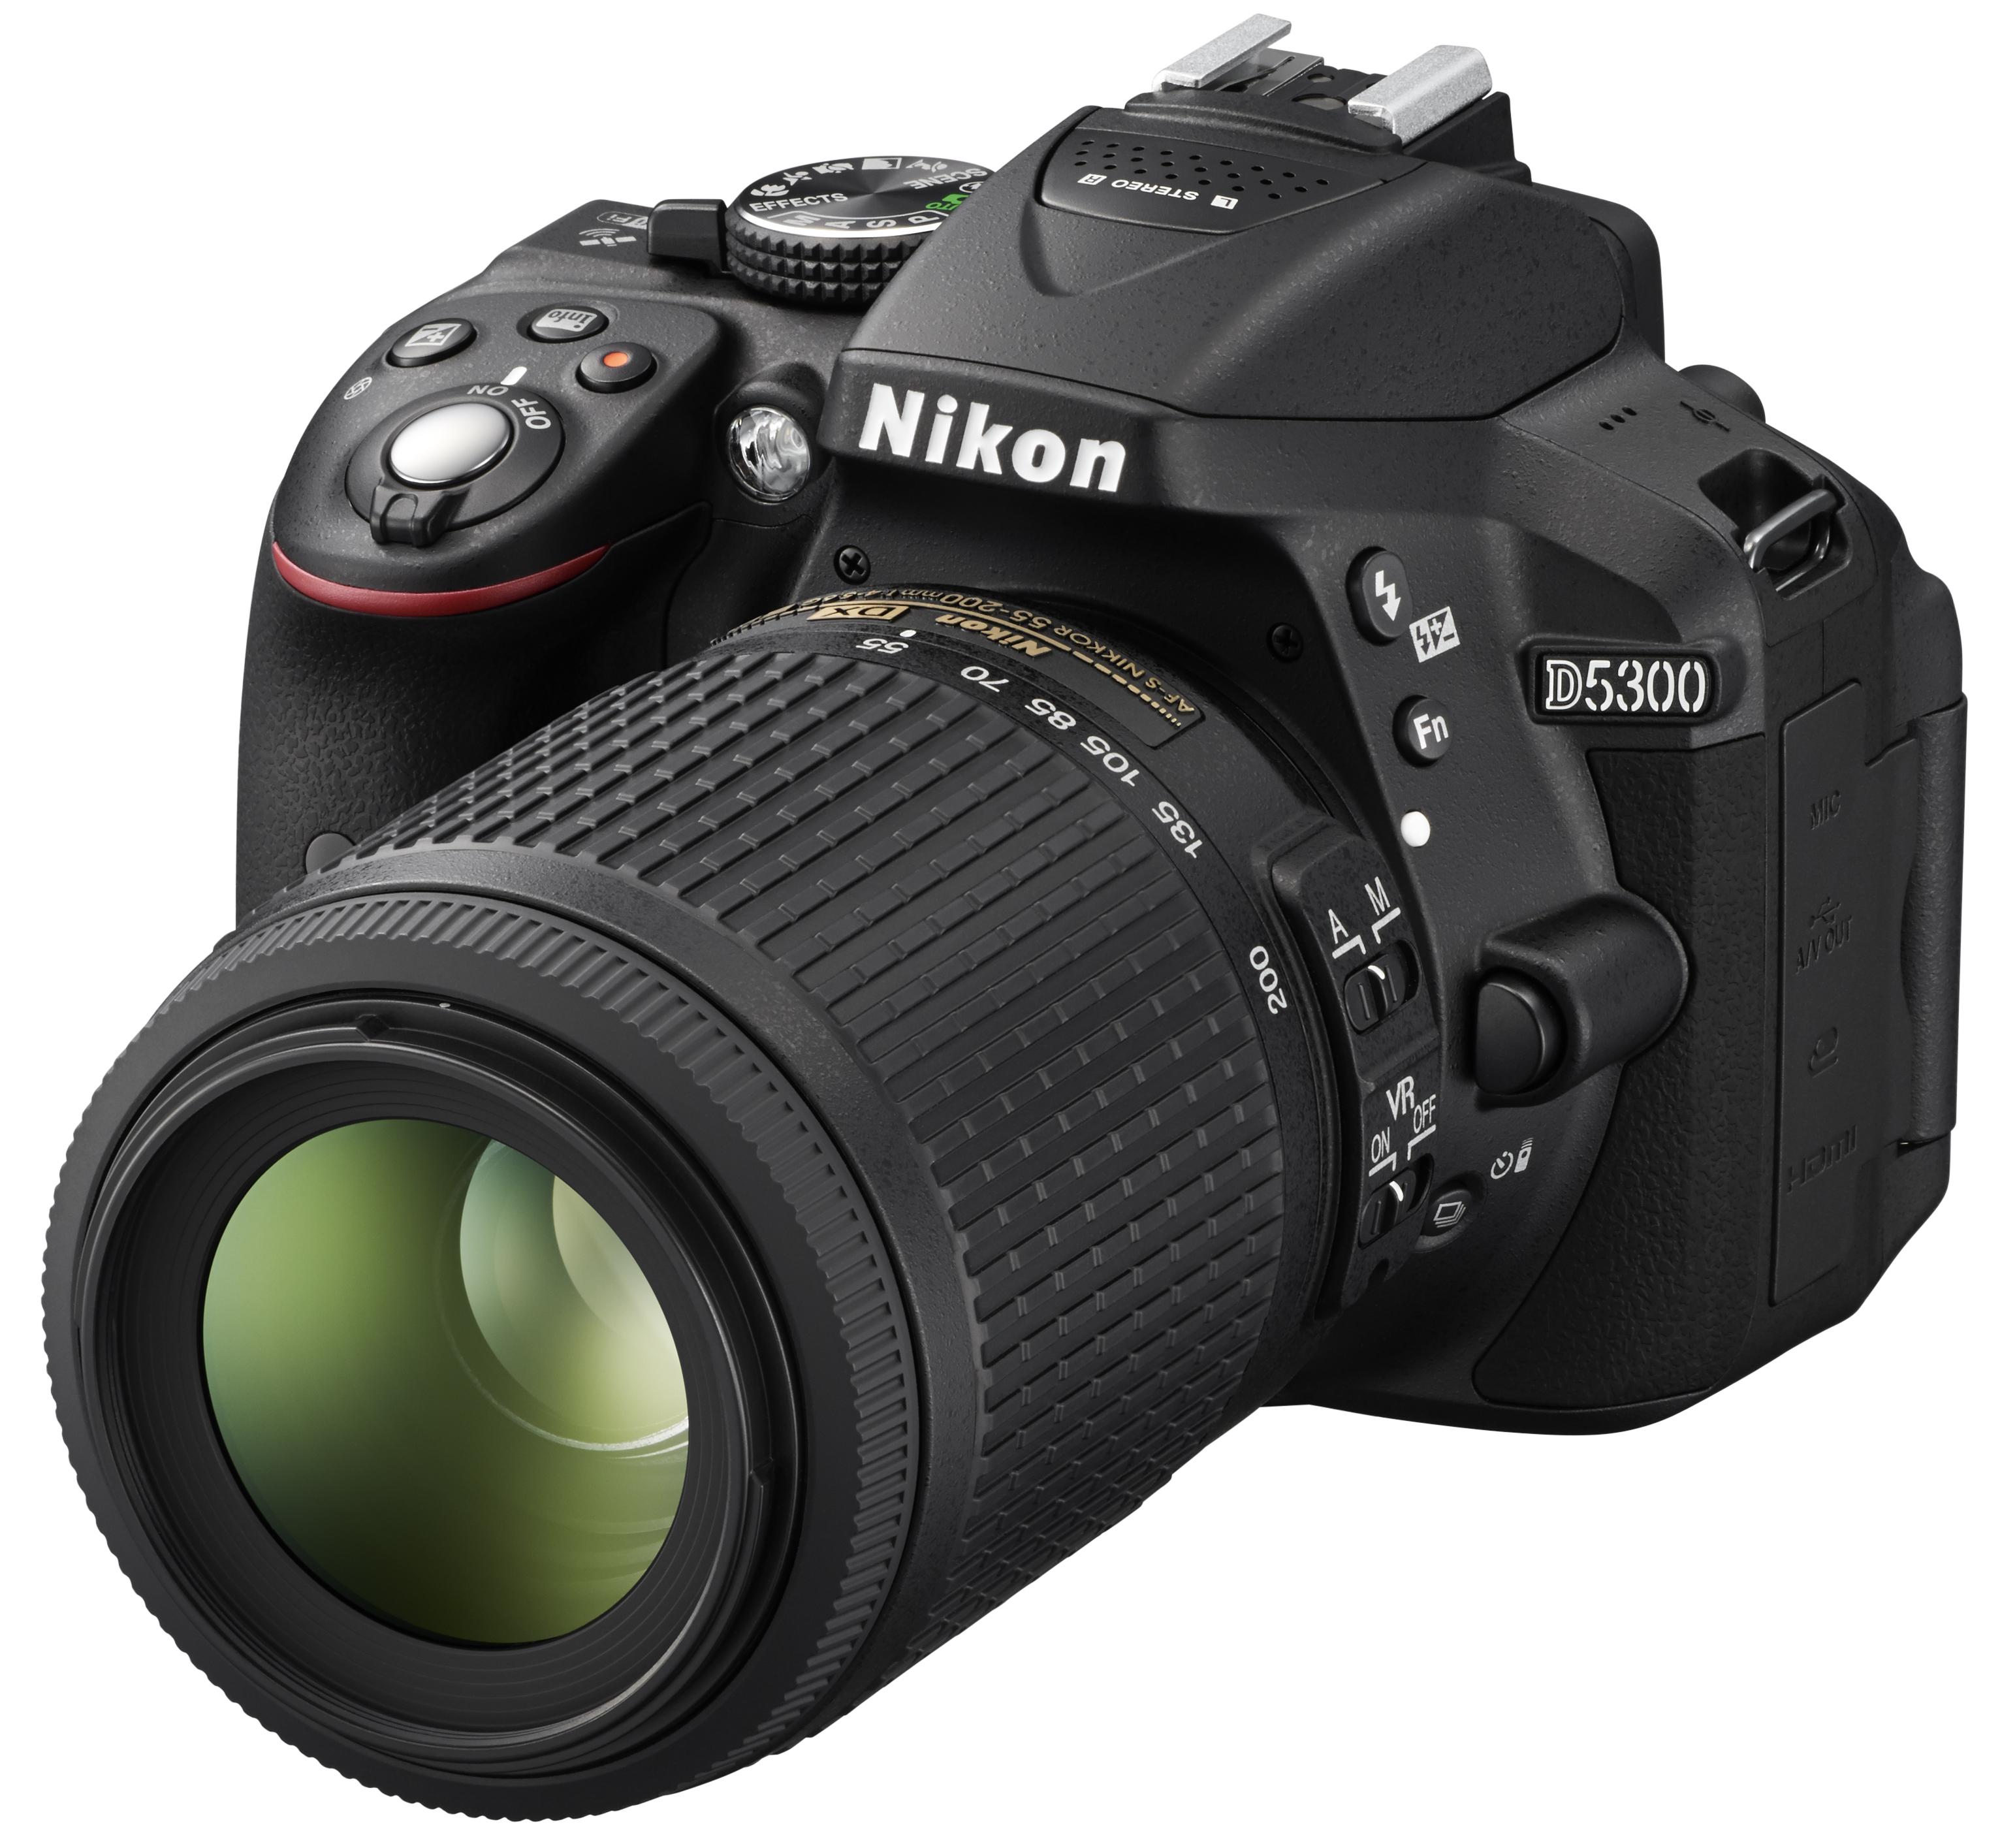 Nikon D5300 er sosial, med GPS og Wi-Fi innebygd. Foto: Nikon